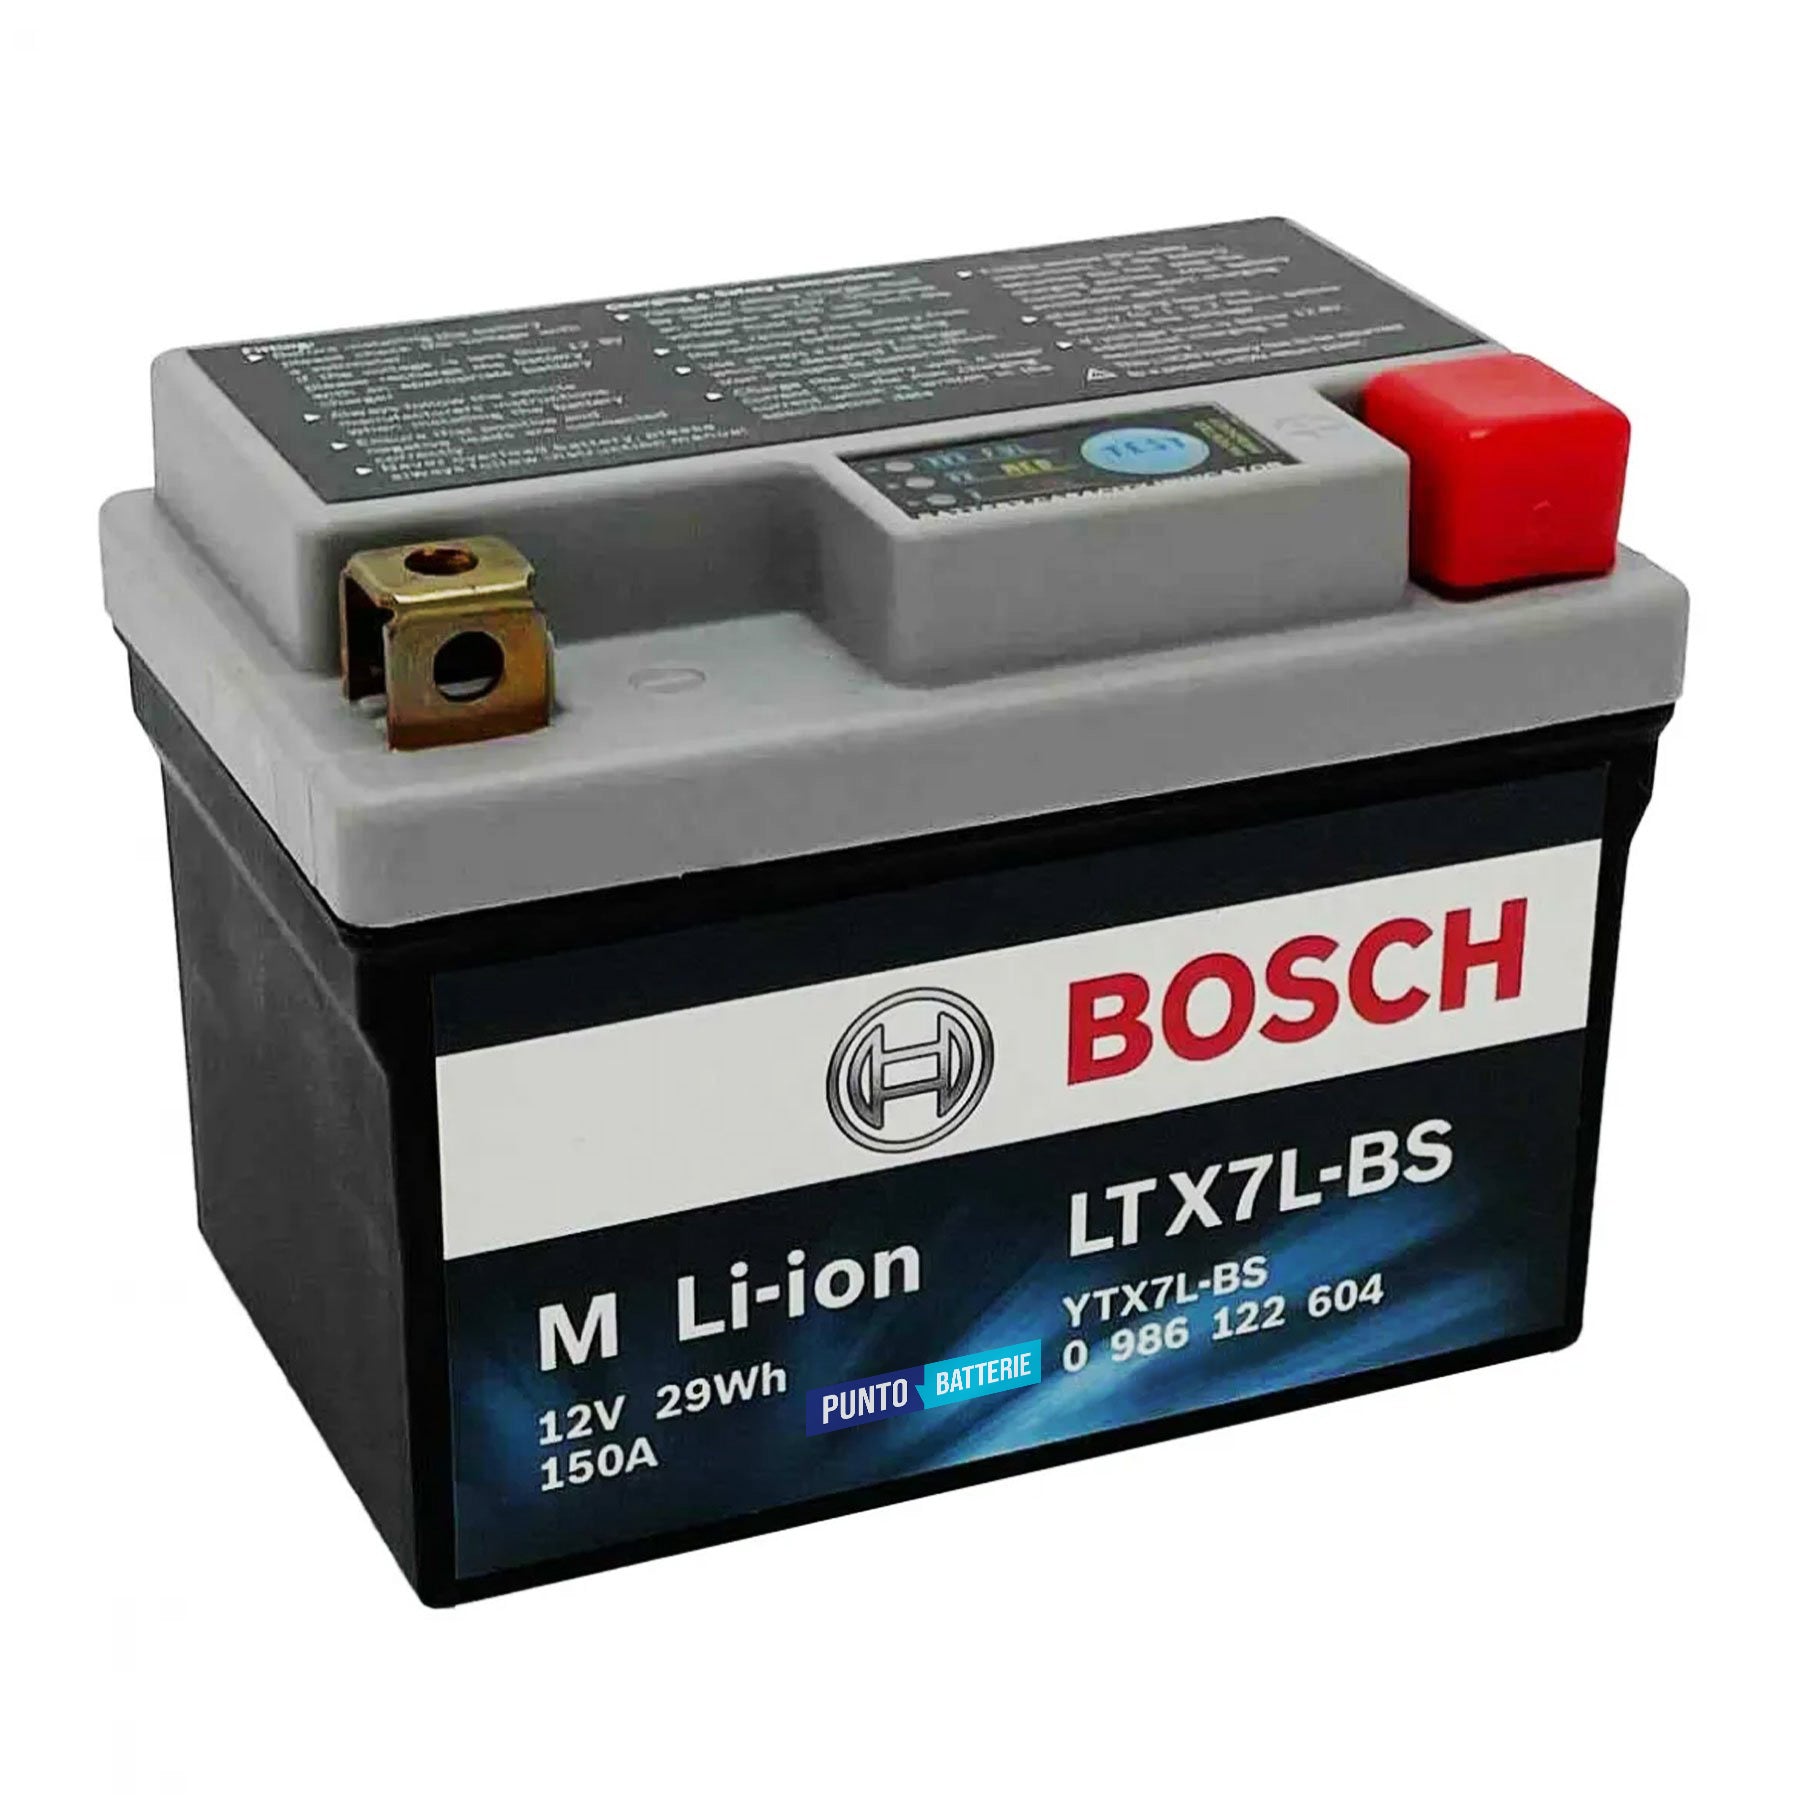 Batteria originale Bosch M Li-ion LTX7L-BS, dimensioni 150 x 87 x 143, polo positivo a destra, 12 volt, 2 amperora, 150 ampere. Batteria per moto, scooter e powersport.